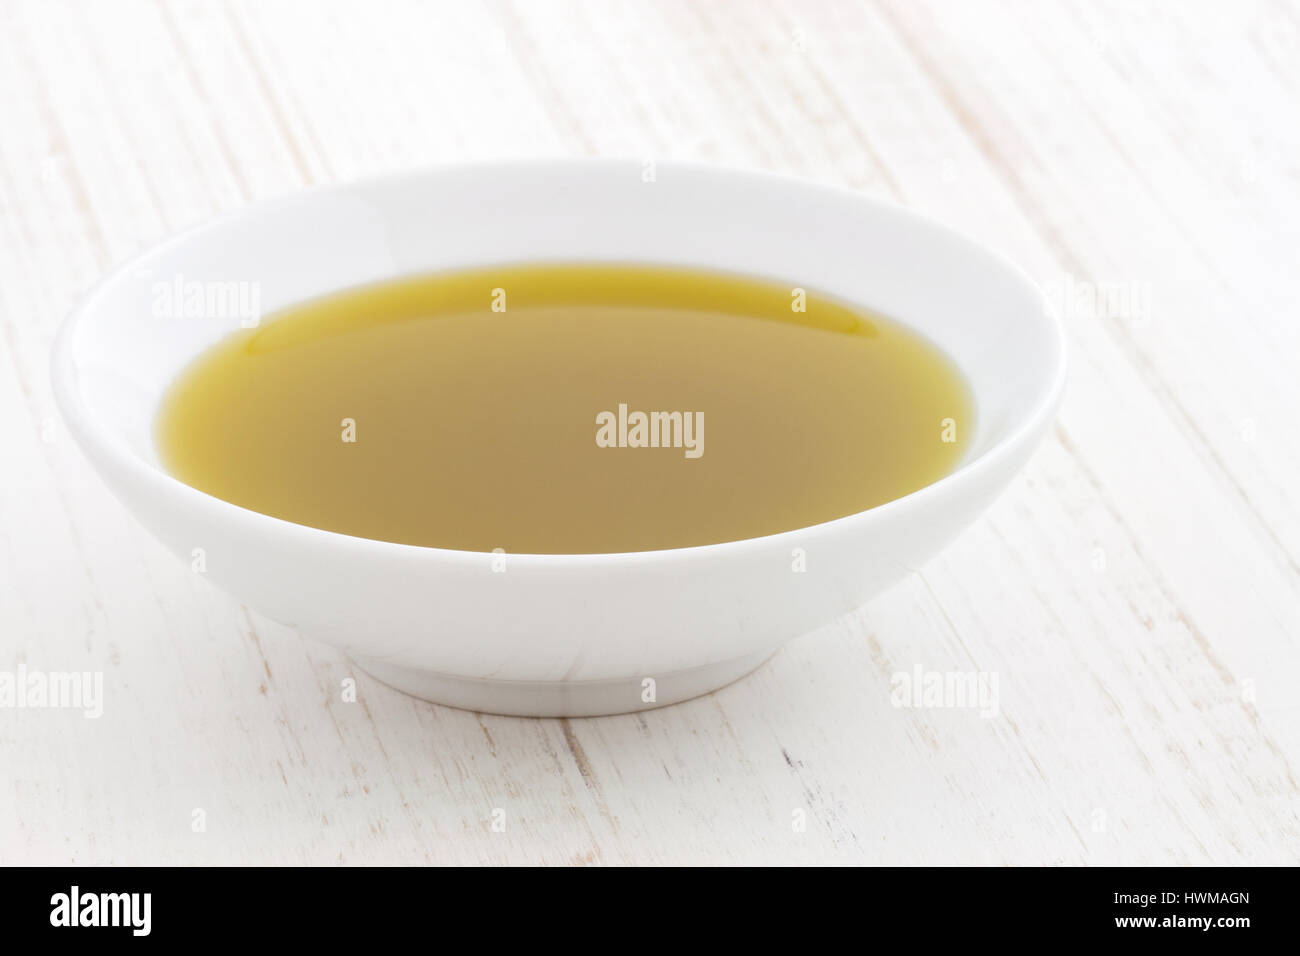 Köstliches Olivenöl hergestellt aus frischen kalt gepresste Oliven eines der am häufigsten verwendeten Öle in der feinen Küche. Stockfoto